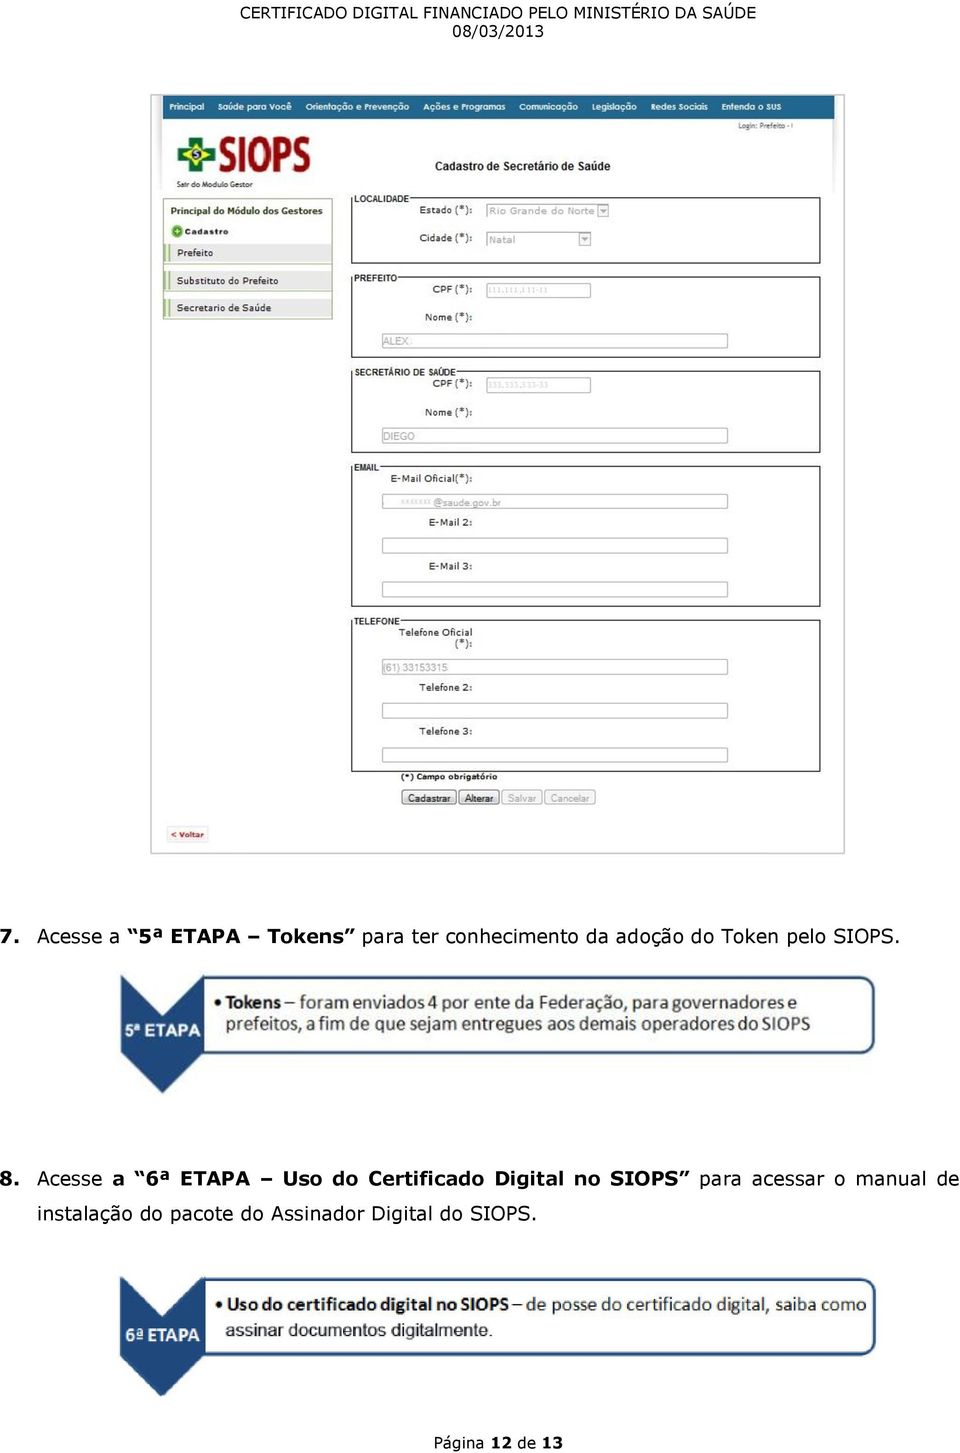 Acesse a 6ª ETAPA Uso do Certificado Digital no SIOPS